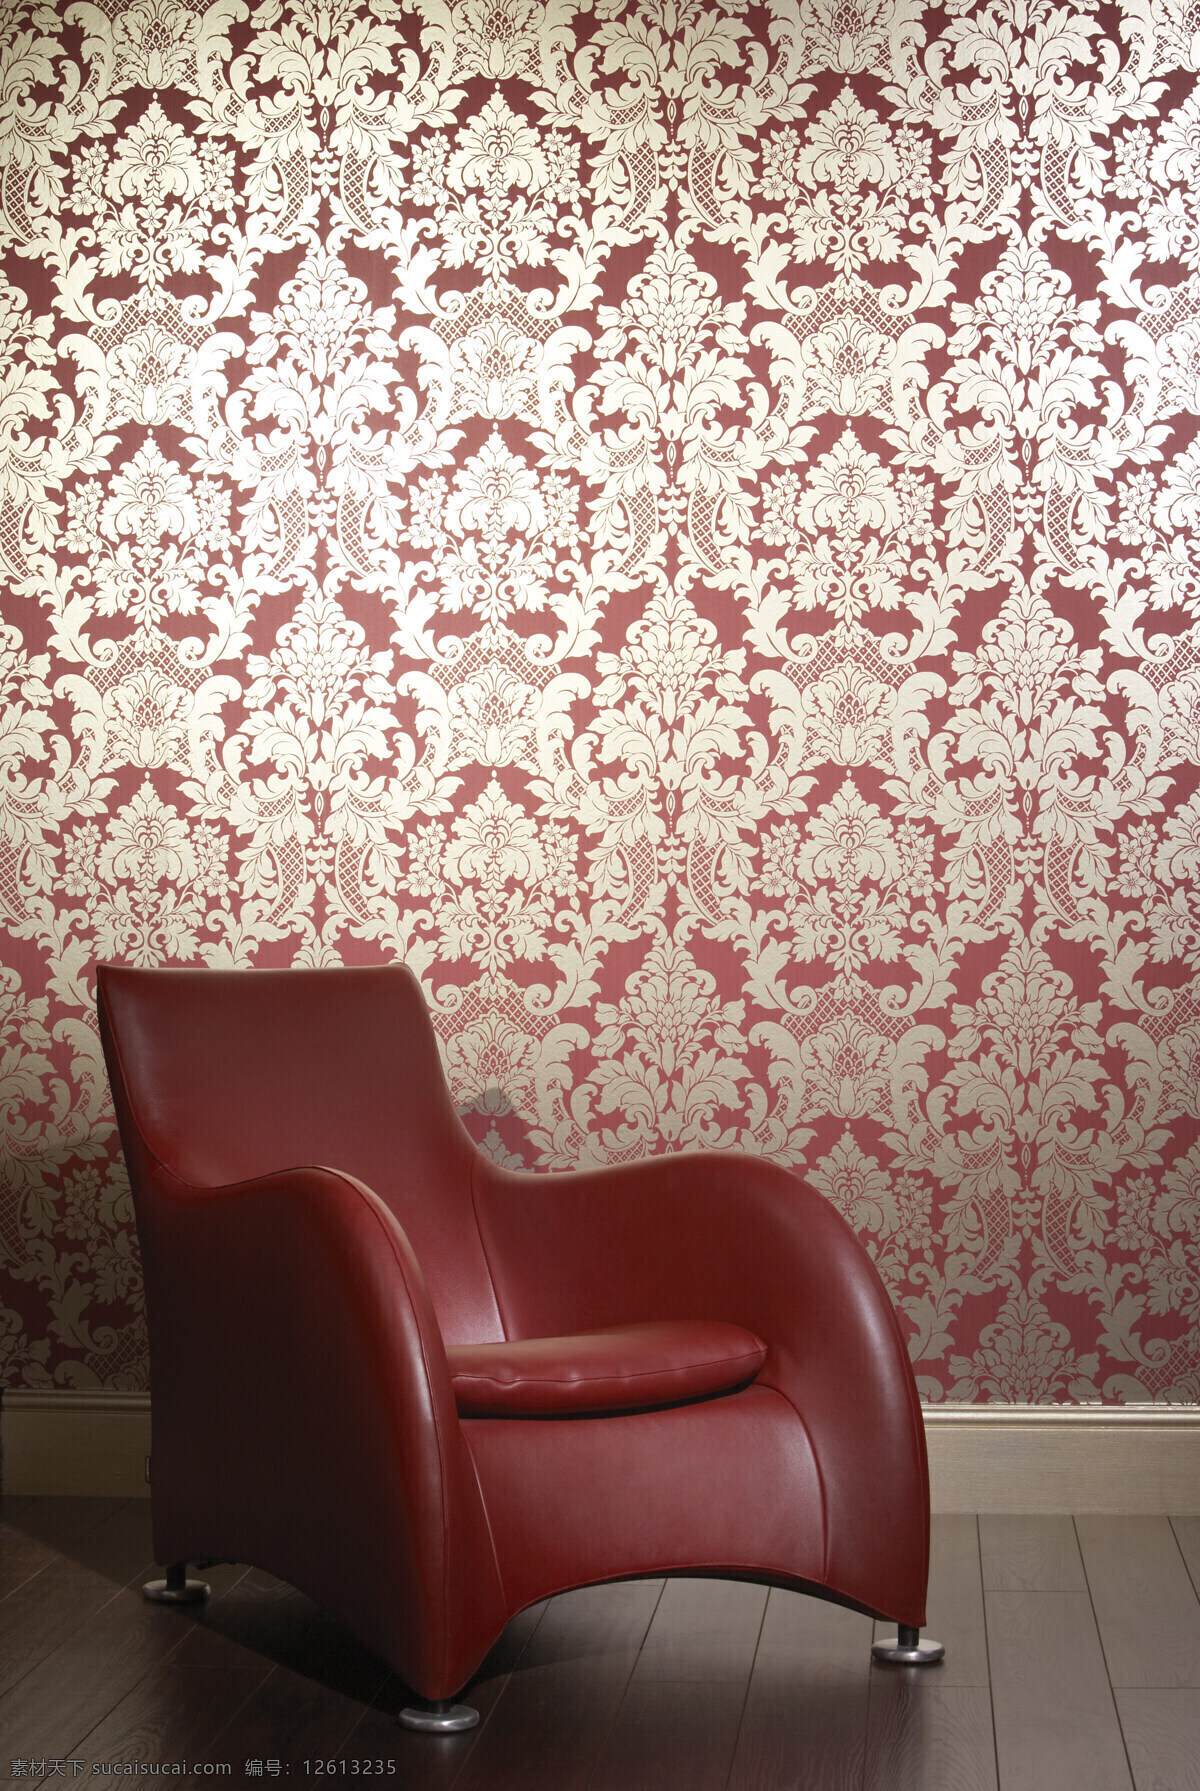 背景 壁纸 红色 花纹 环境设计 墙纸 沙发 室内 设计素材 模板下载 室内墙纸图片 室内设计 家居装饰素材 壁纸墙画壁纸